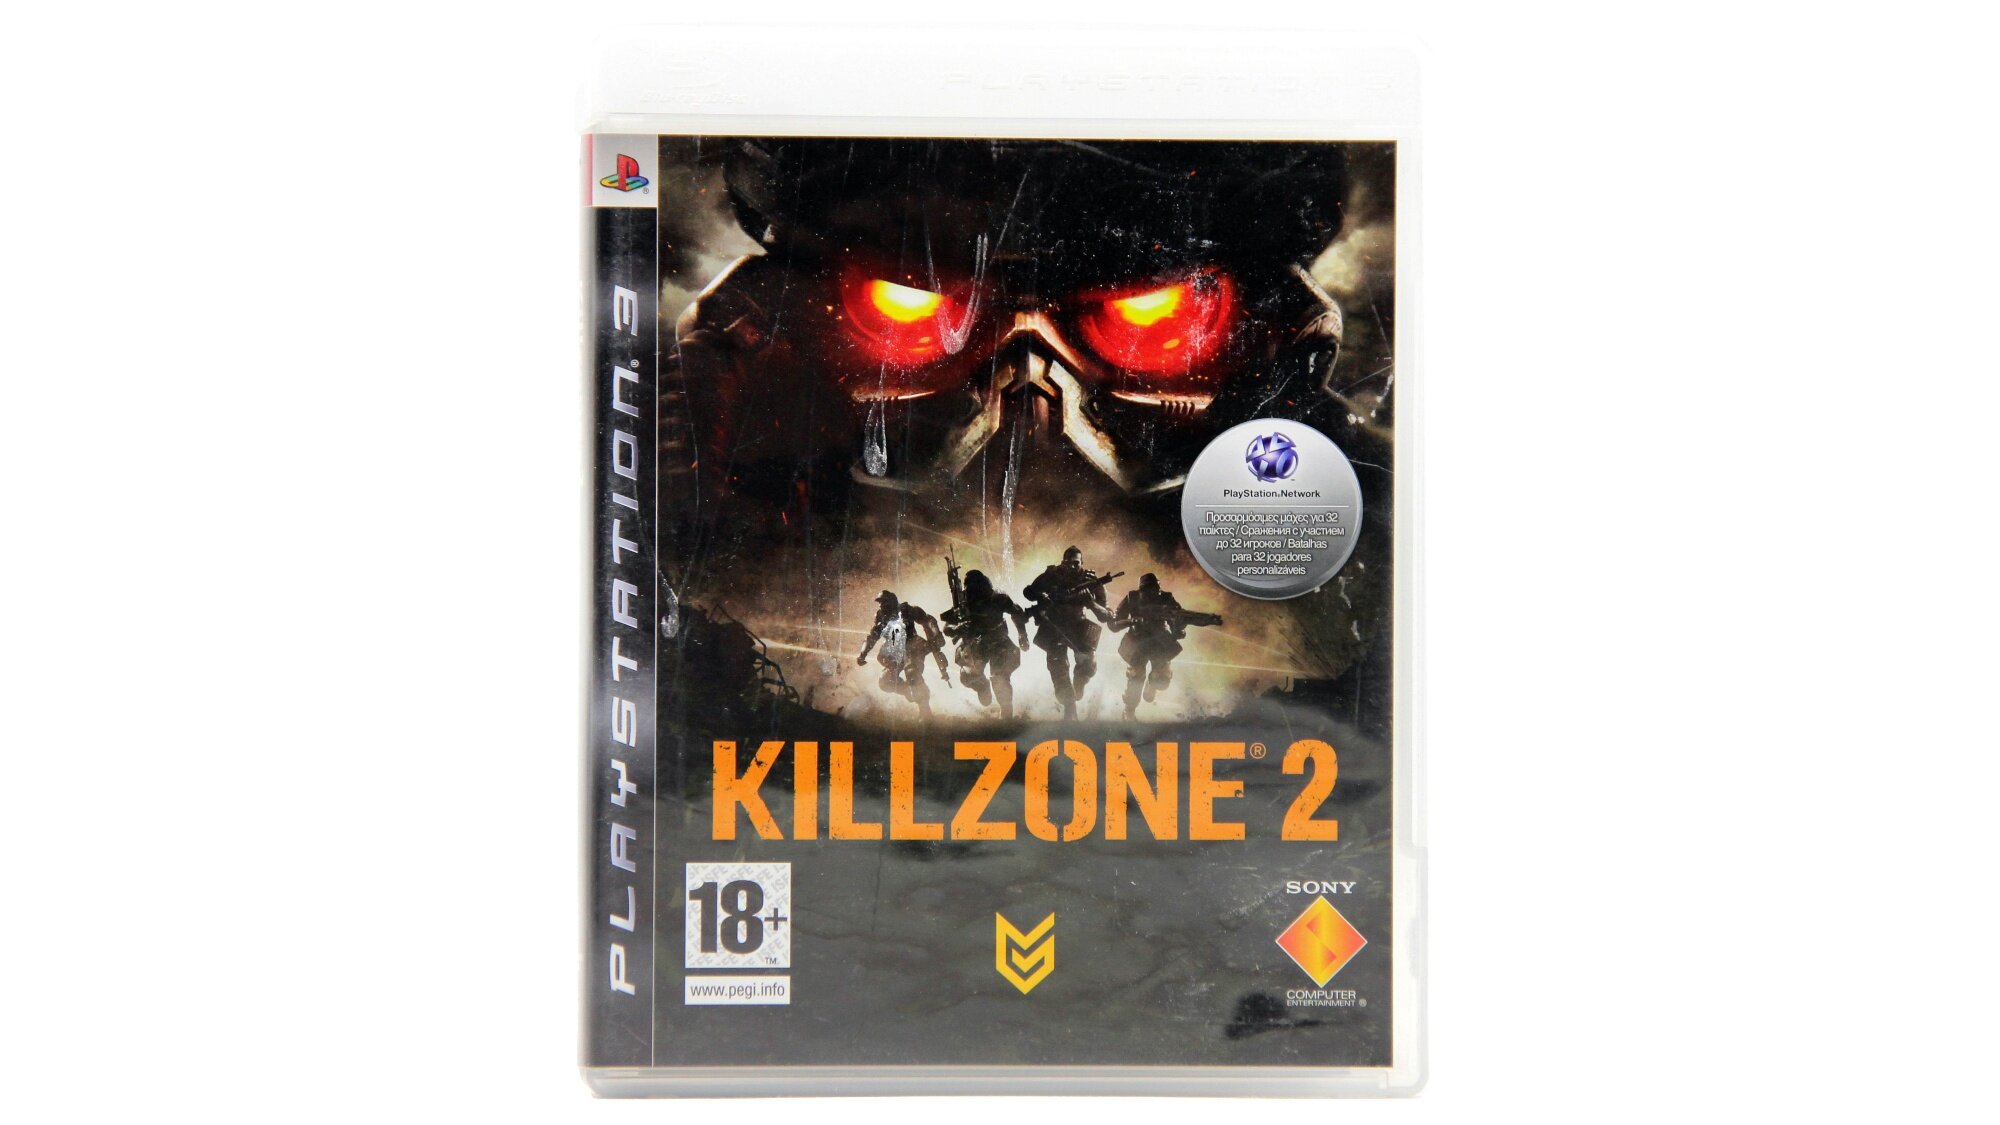 Killzone 2 (PS3)